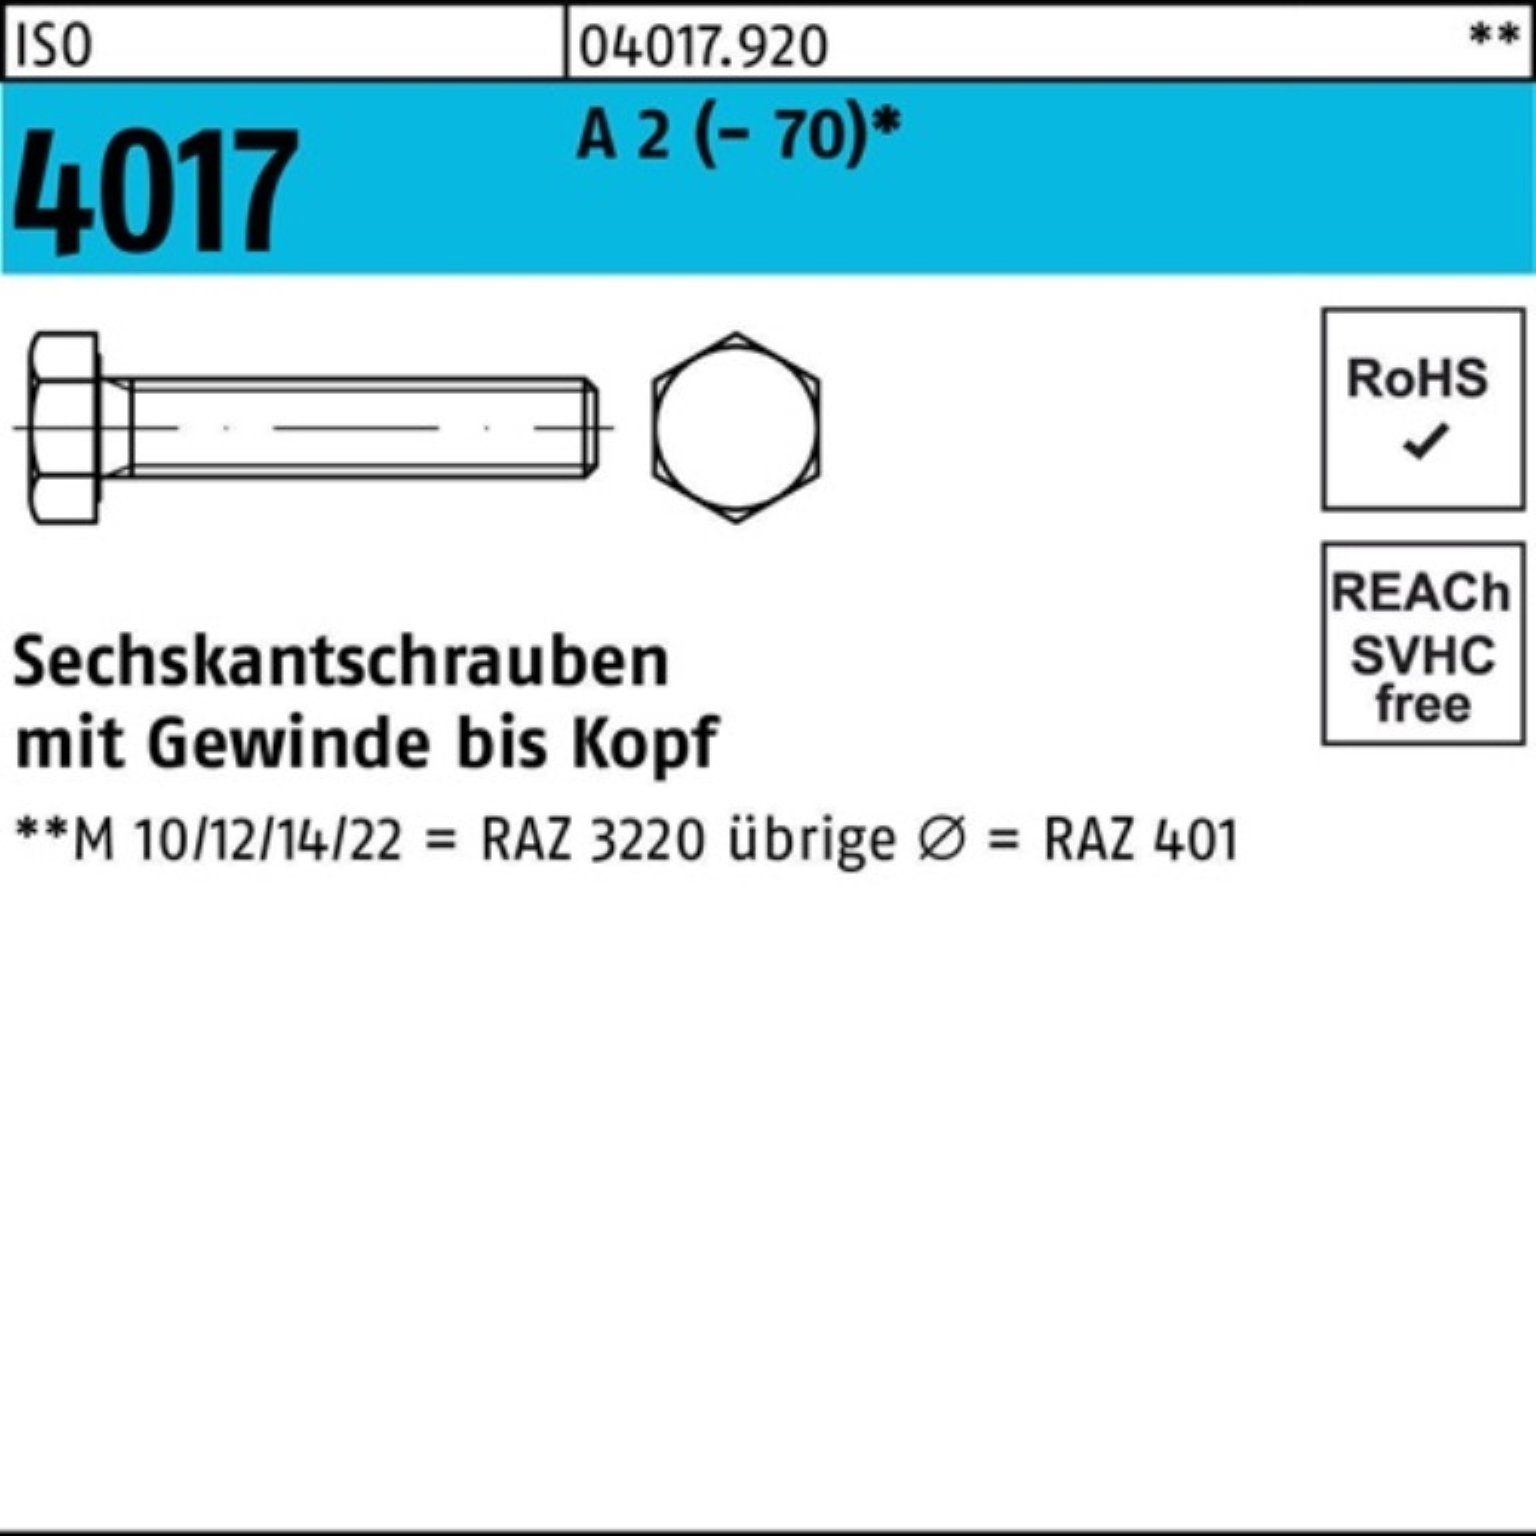 ISO 70 Sechskantschraube Sechskantschraube 50 2 Pack 100er Stück VG 4017 A (70) Bufab M14x